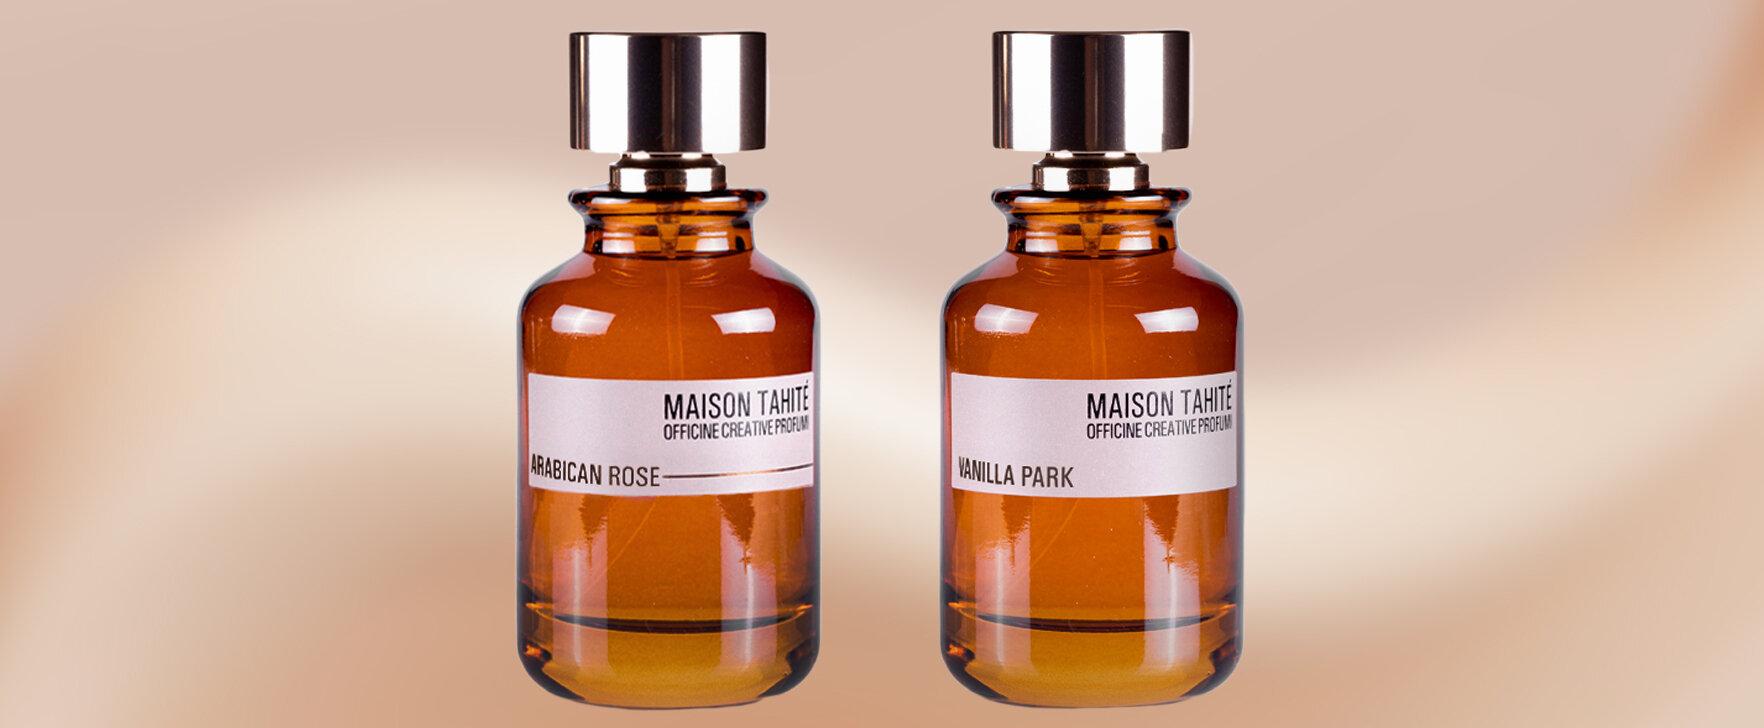 The New Eaux de Parfum From Maison Tahité: "Arabican Rose" and "Vanilla Park"